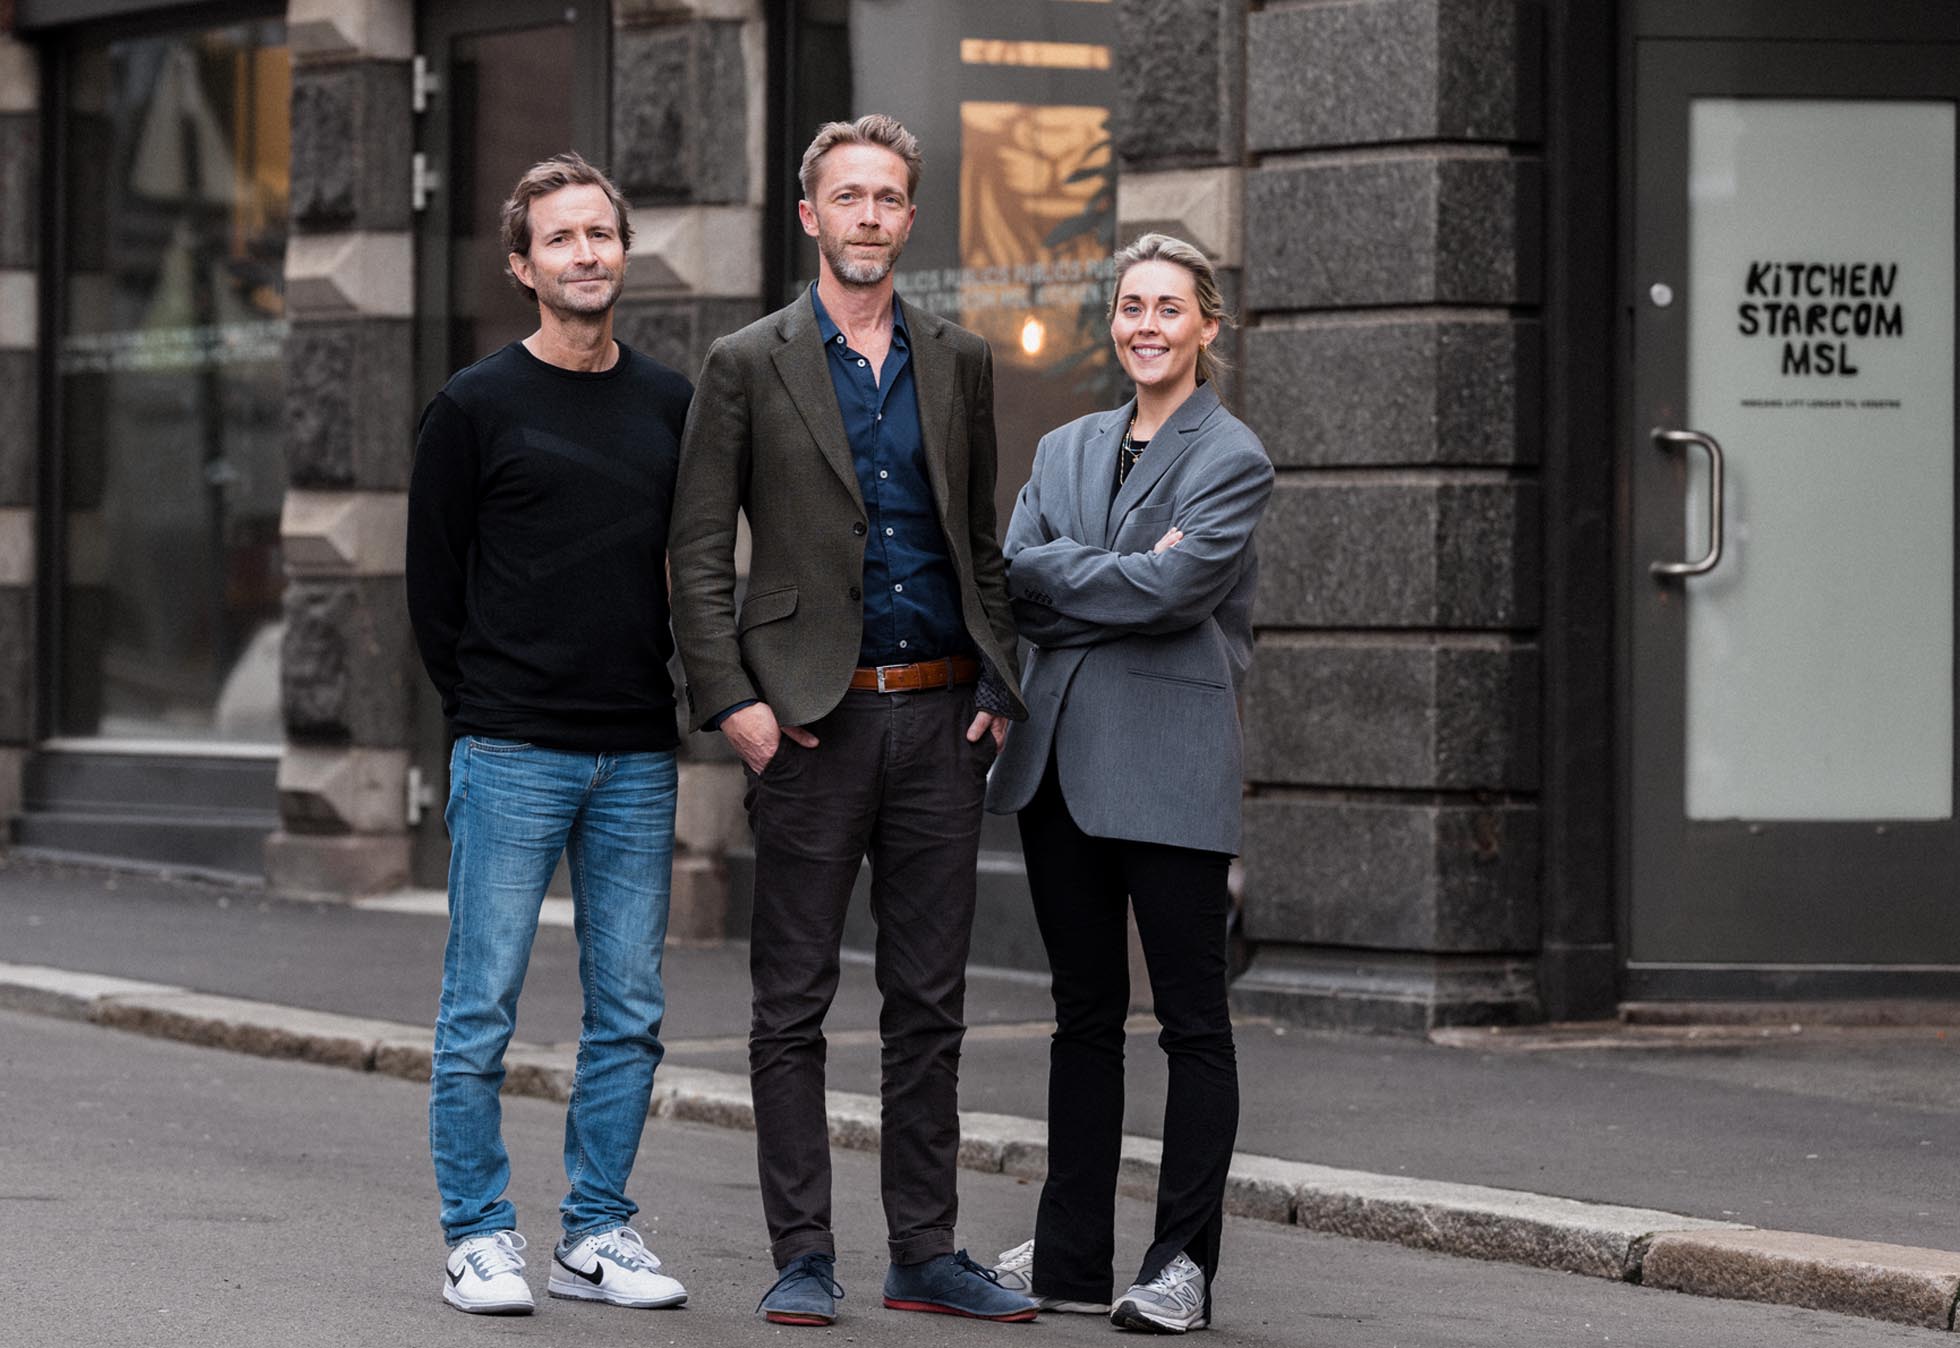 Klart for lederskifte i Kitchen: - Har mål om å bli Norges ledende kreative byrå